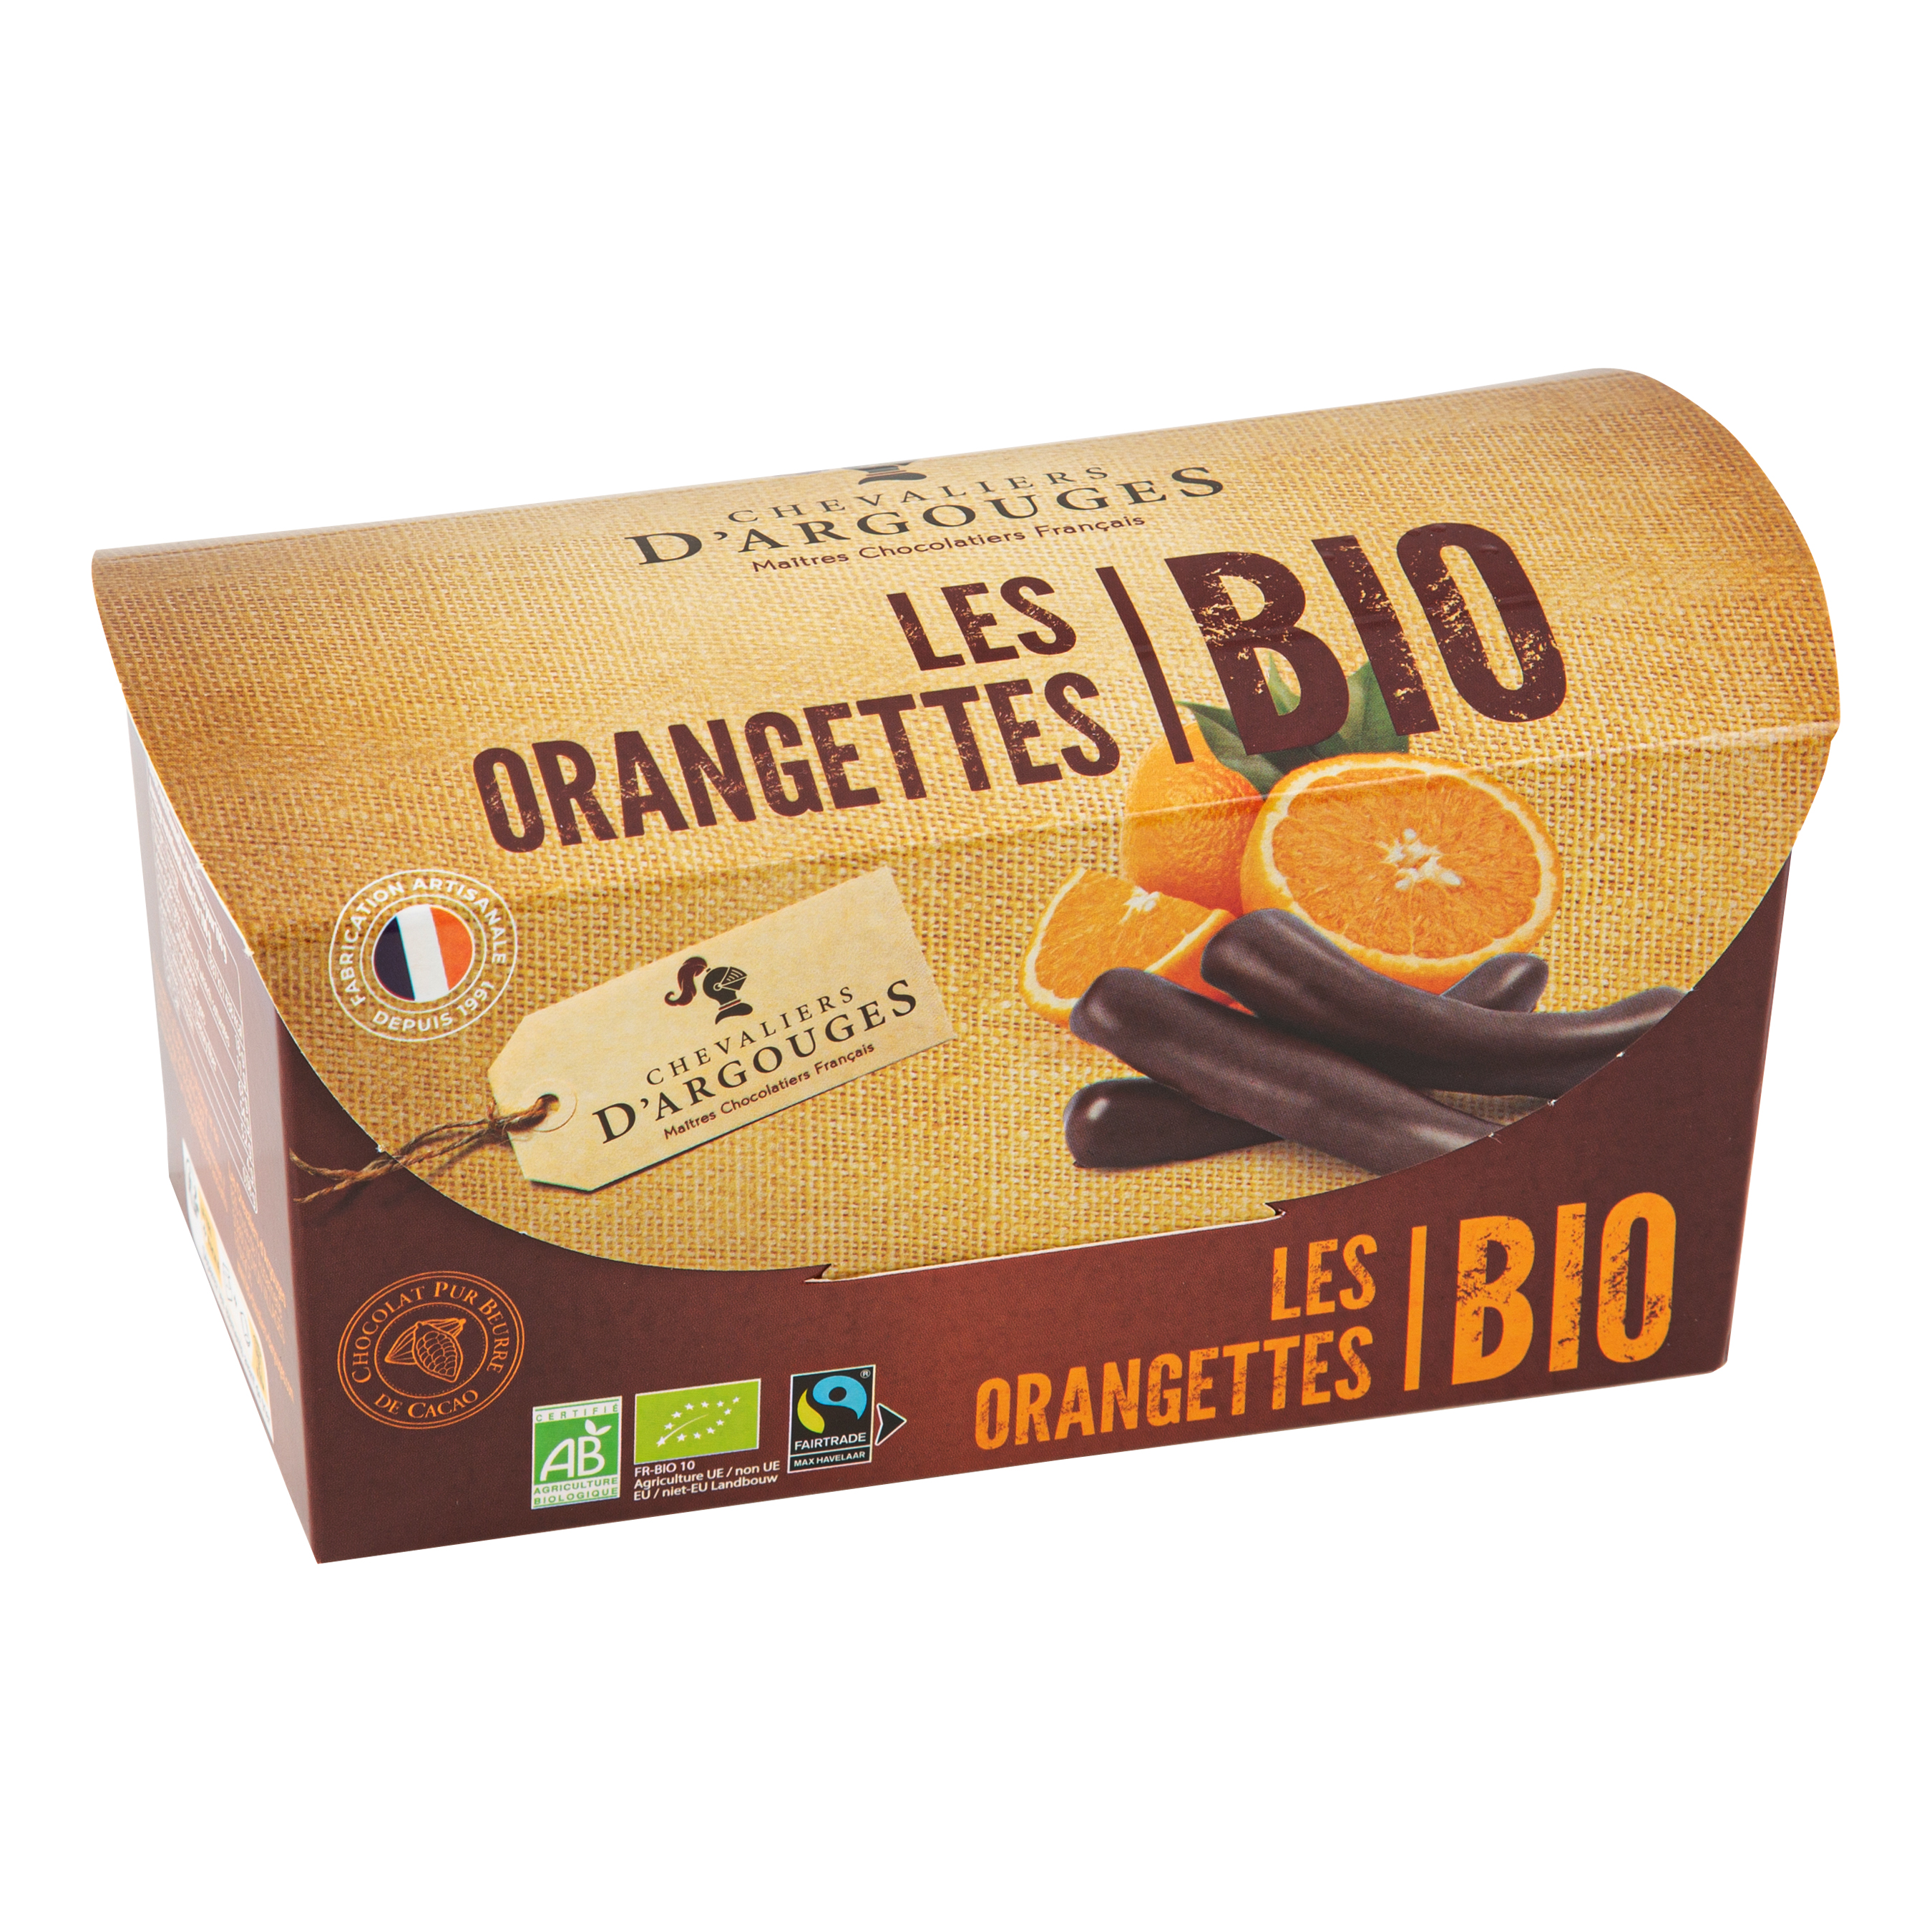 Orangettes Les Chevaliers D'Argouges, Buy Online